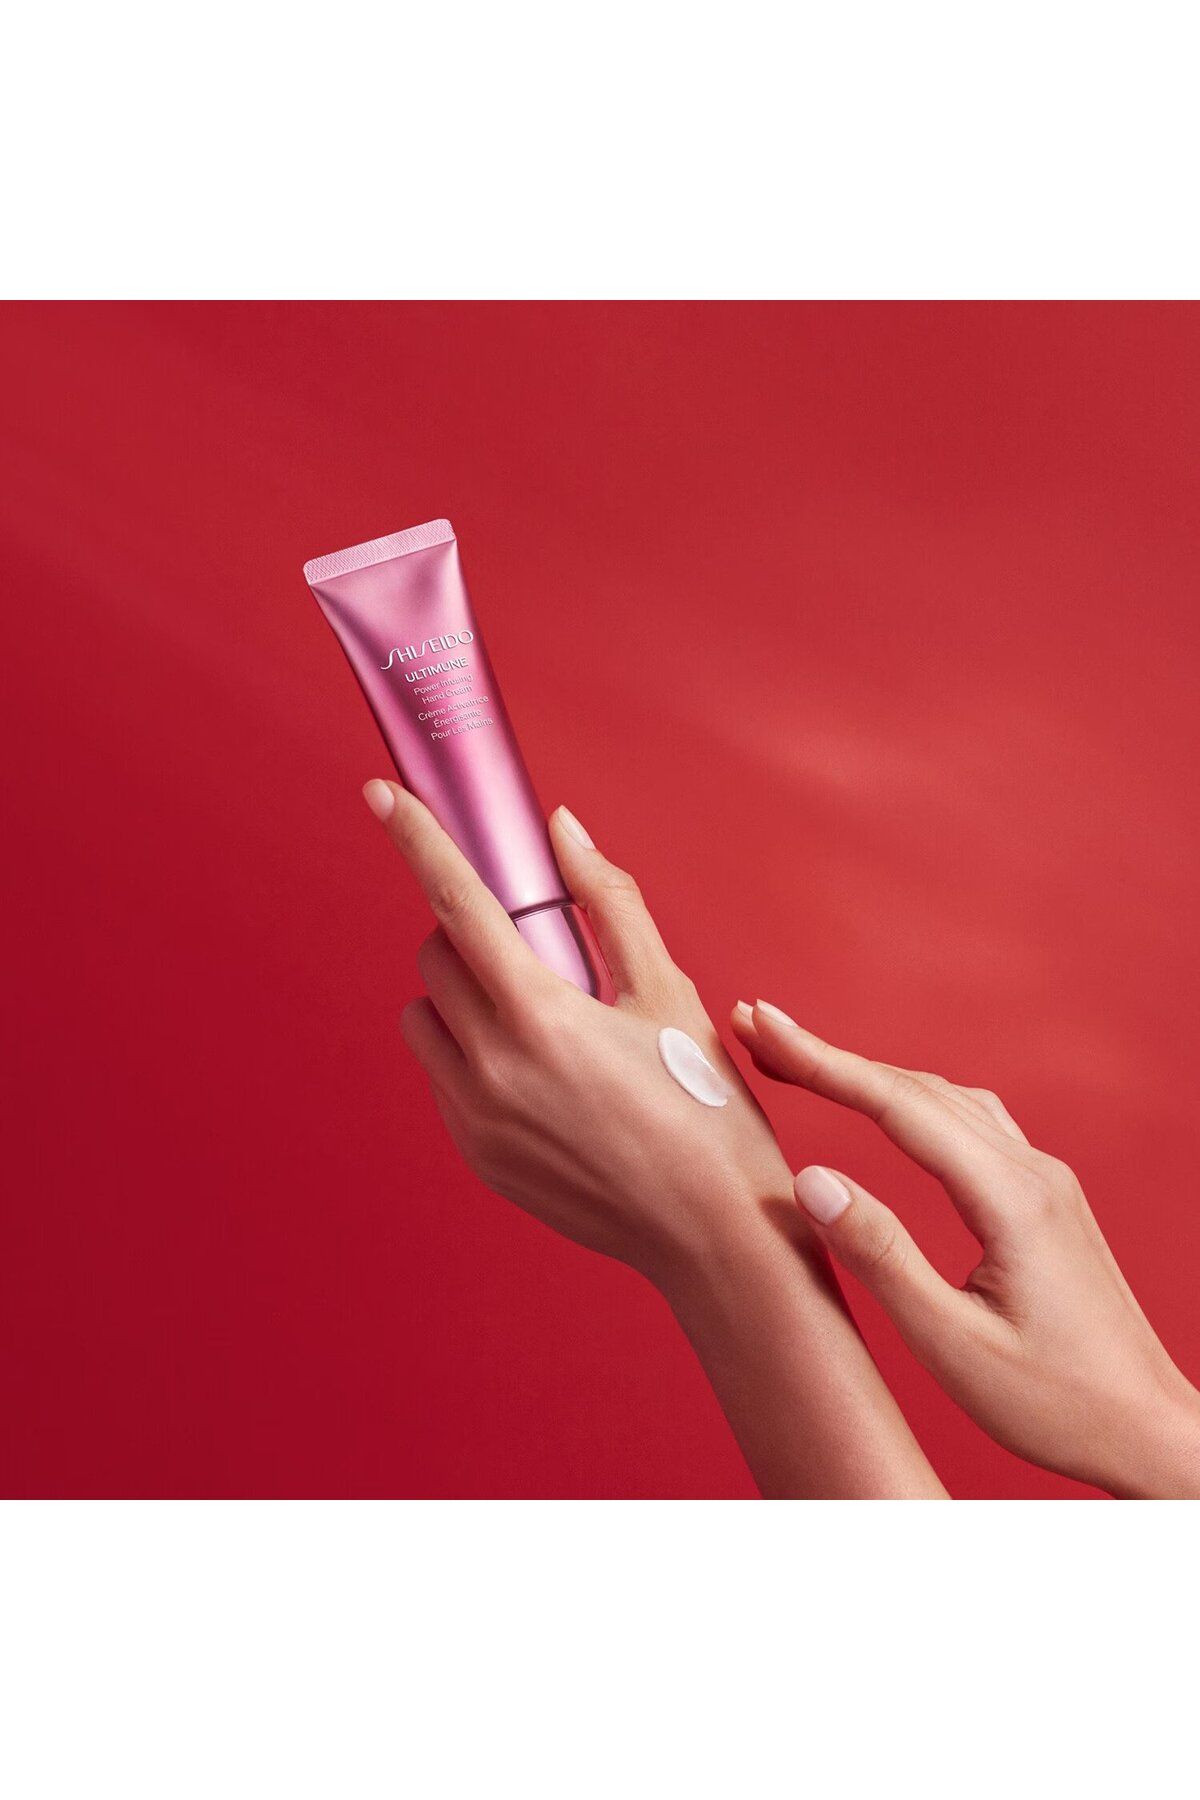 Shiseido کرم مرطوب کننده دست کرم مرطوب کننده تقویت شده با ترطیب کننده ۷۵ میلی لیتر